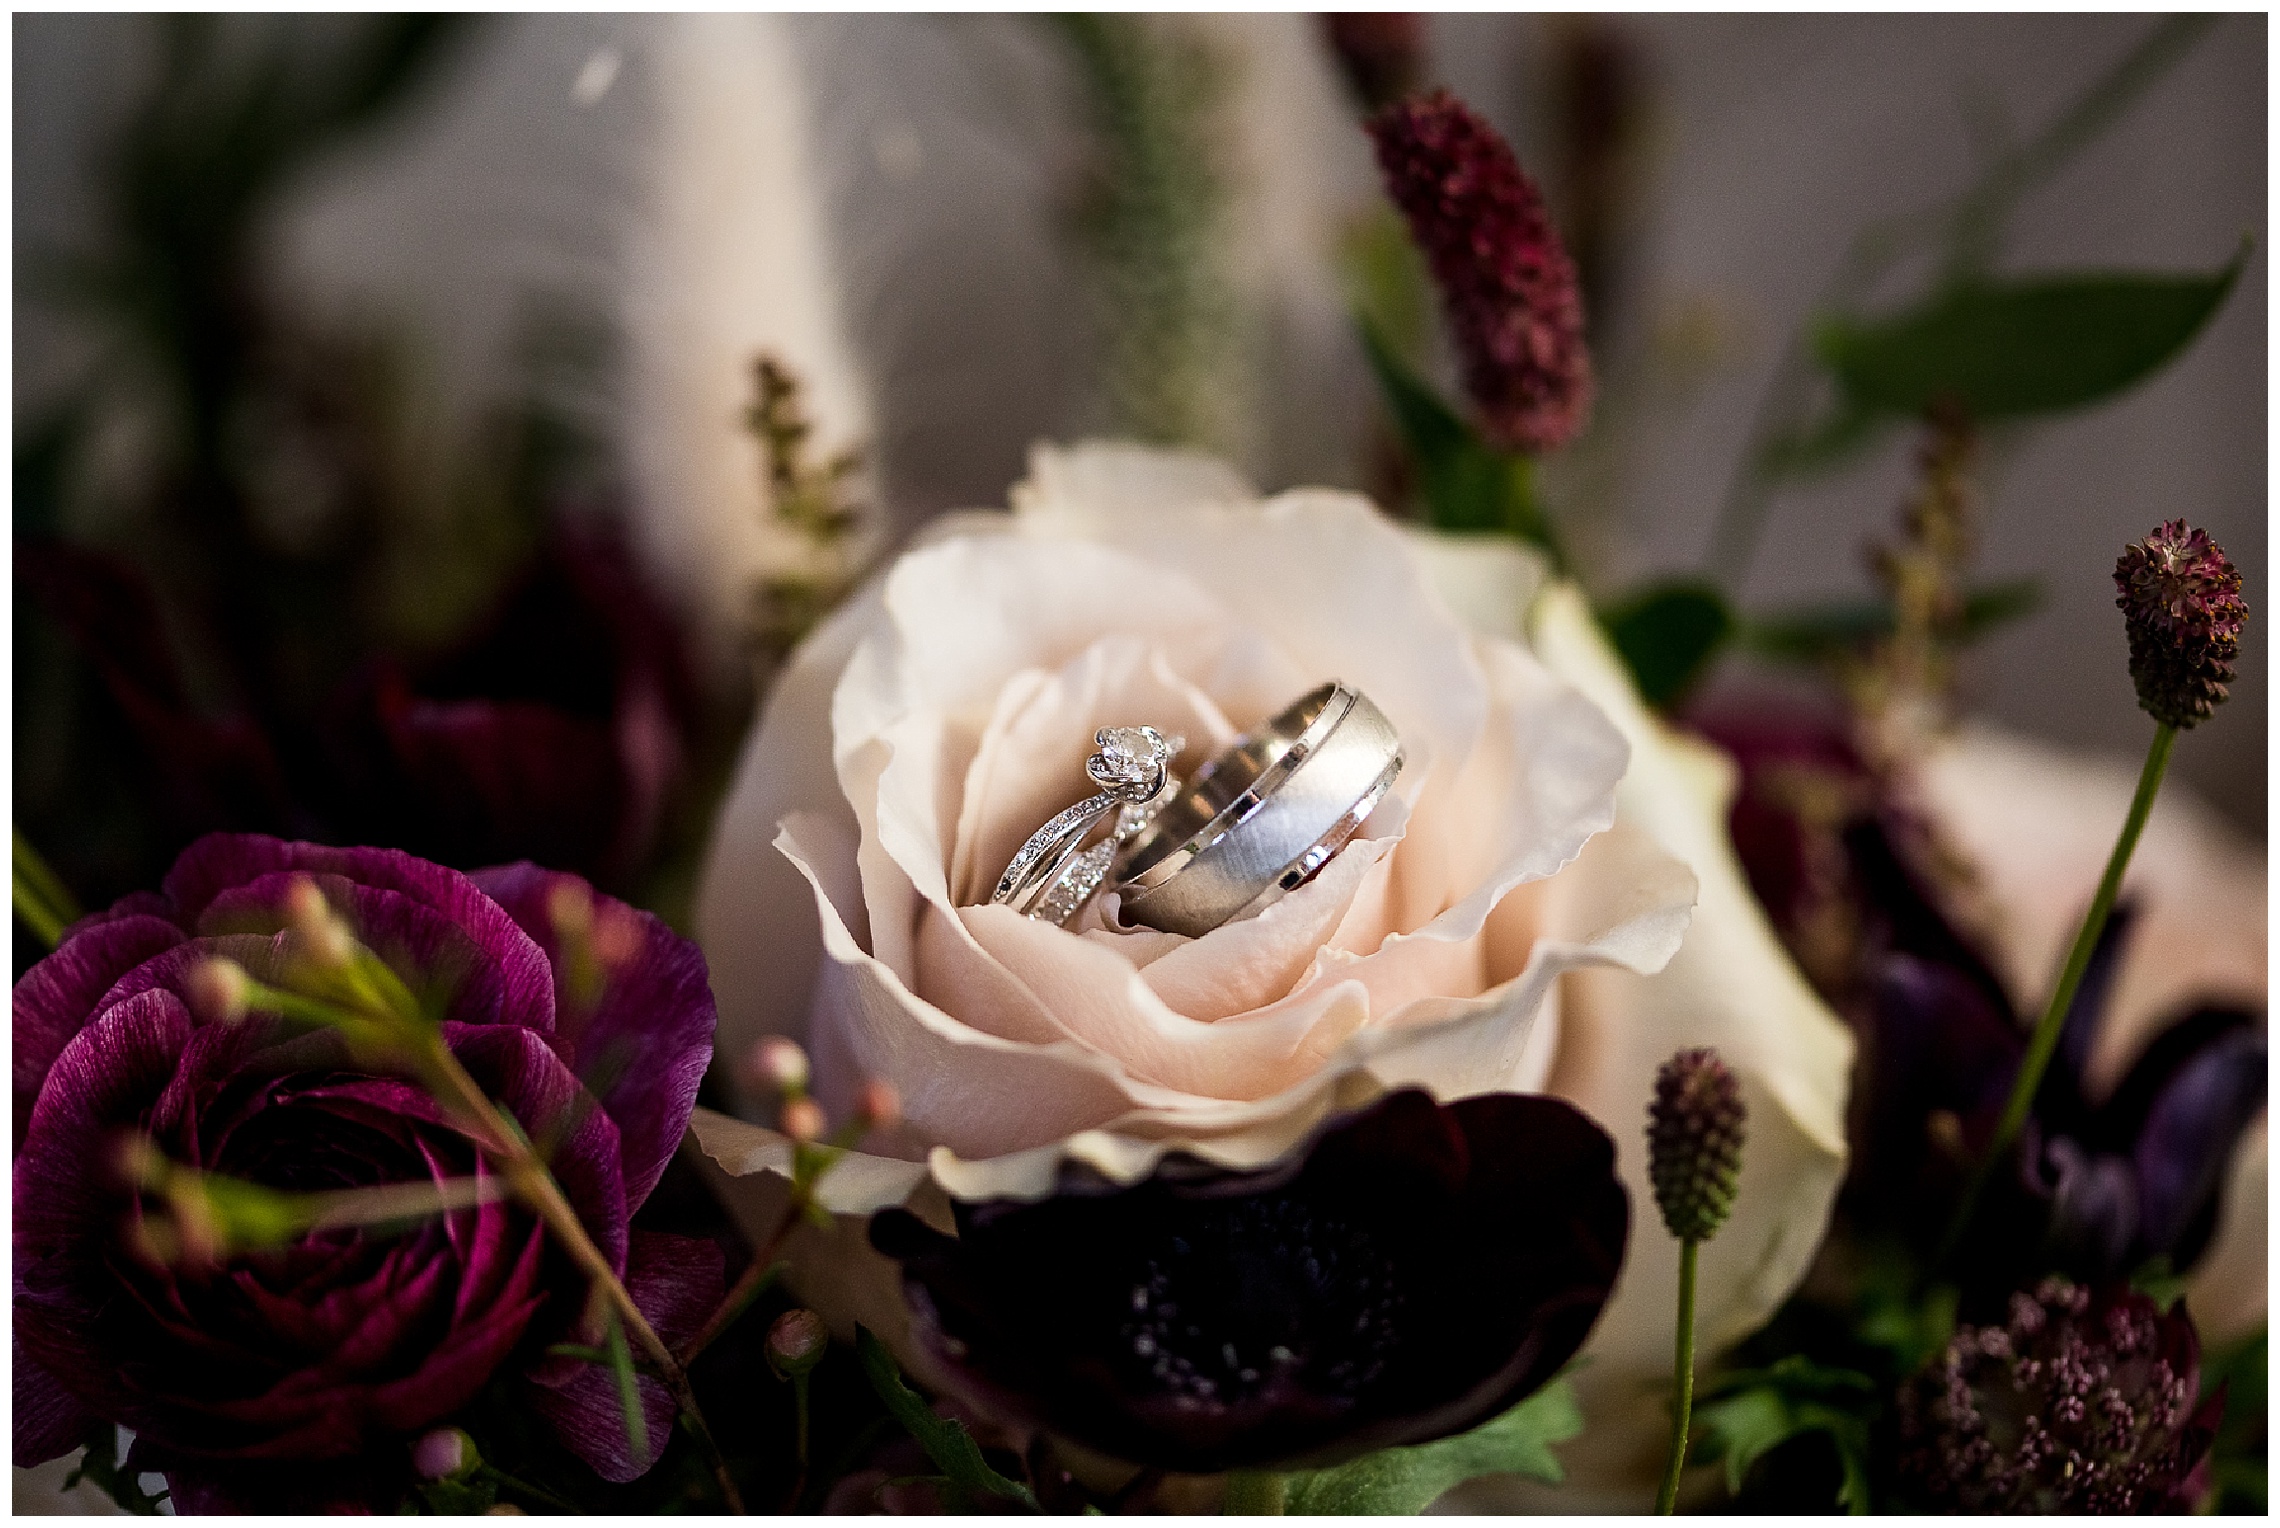 Silver wedding rings in pink flower